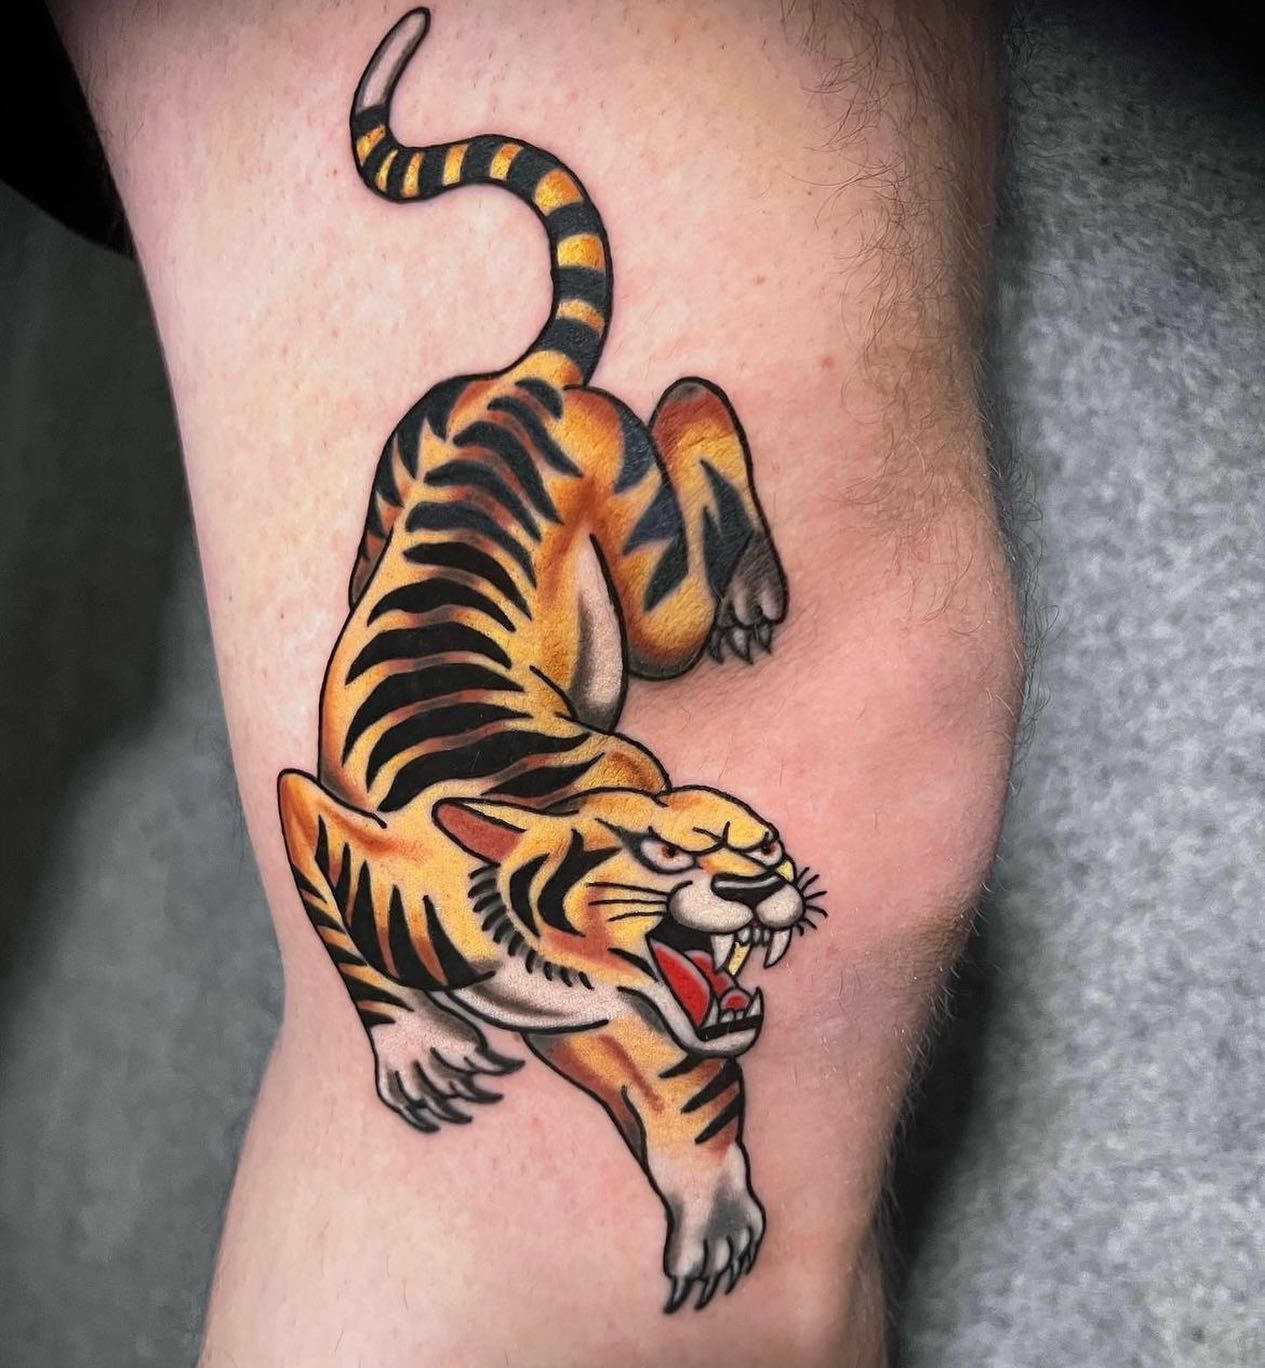 Tatuaje de tigre por encima de la rodilla